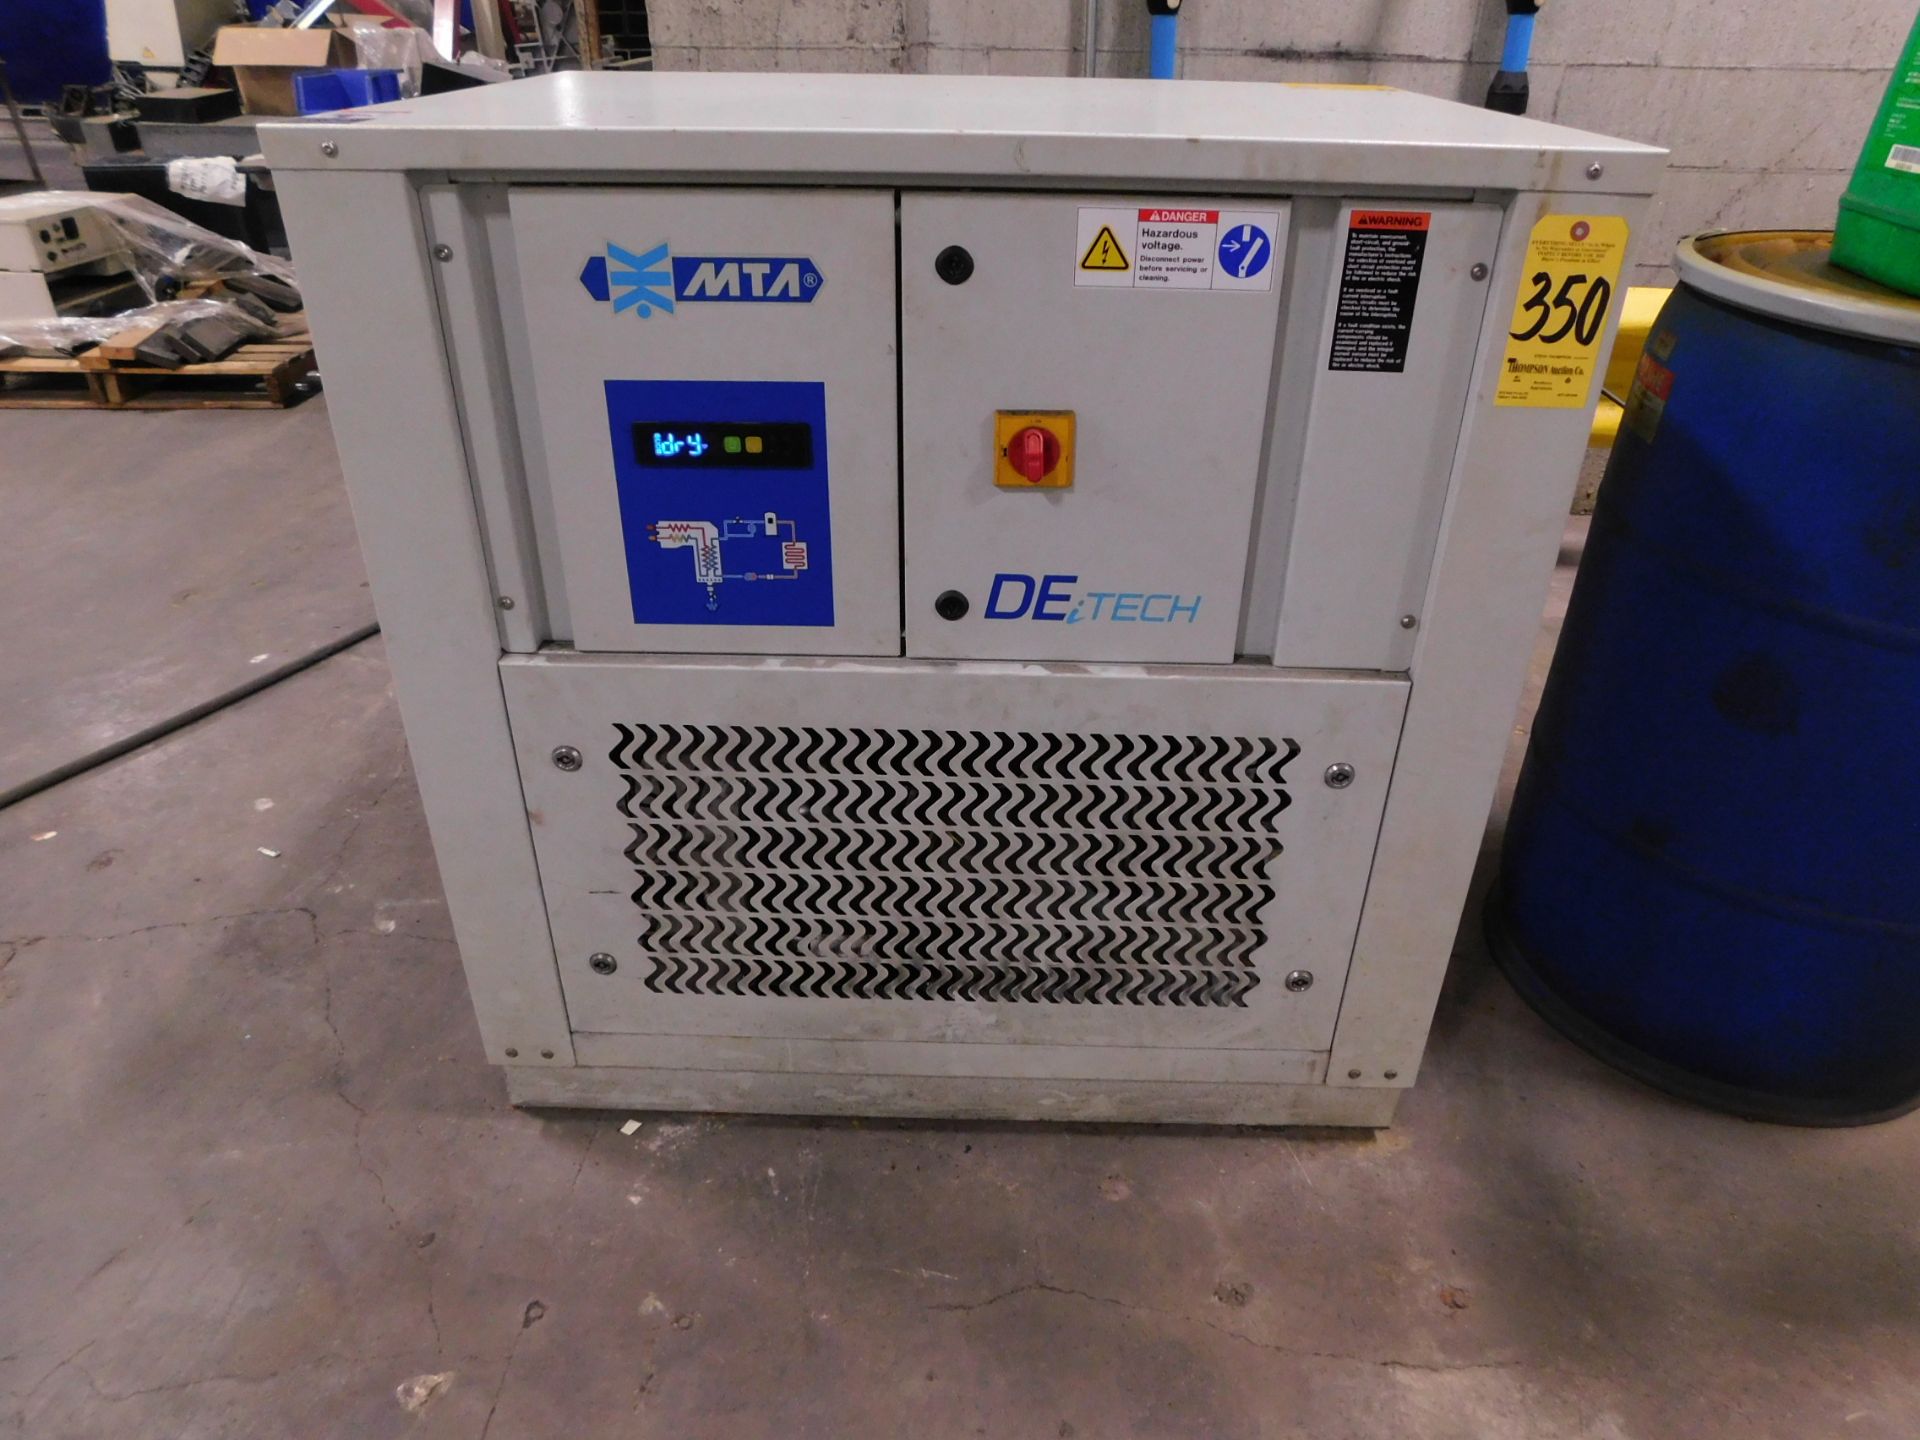 MTE De-Tech Refrigerated Air Dryer, s/n 381783800936